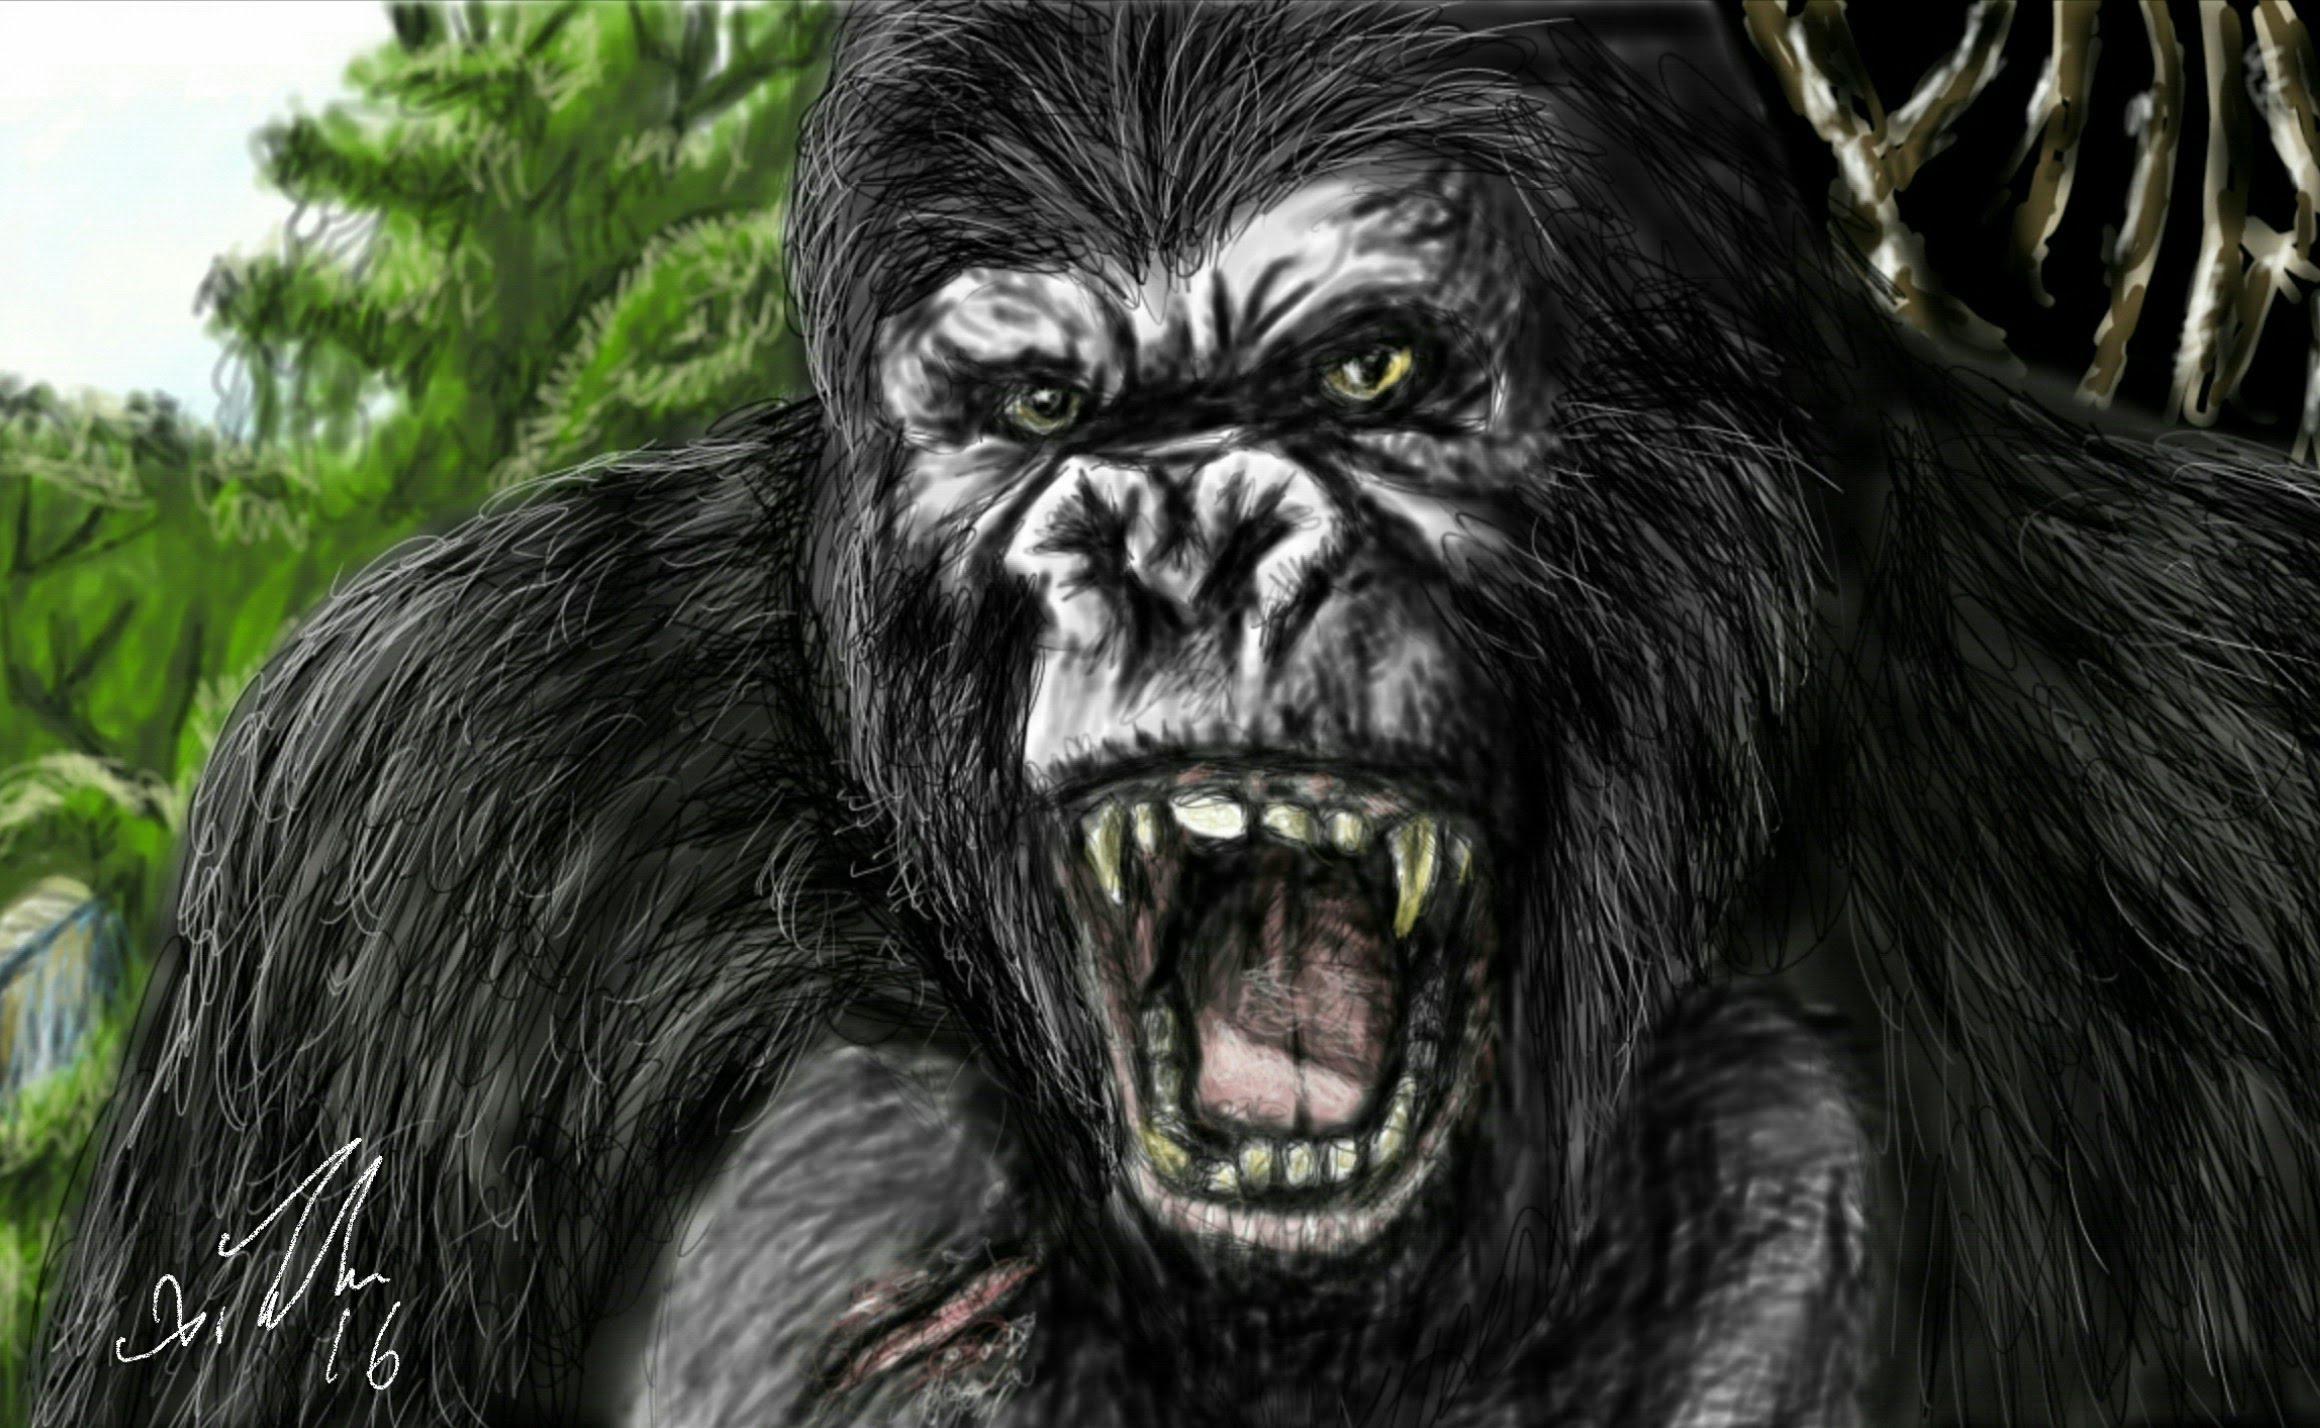 King Kong Drawing at GetDrawings Free download